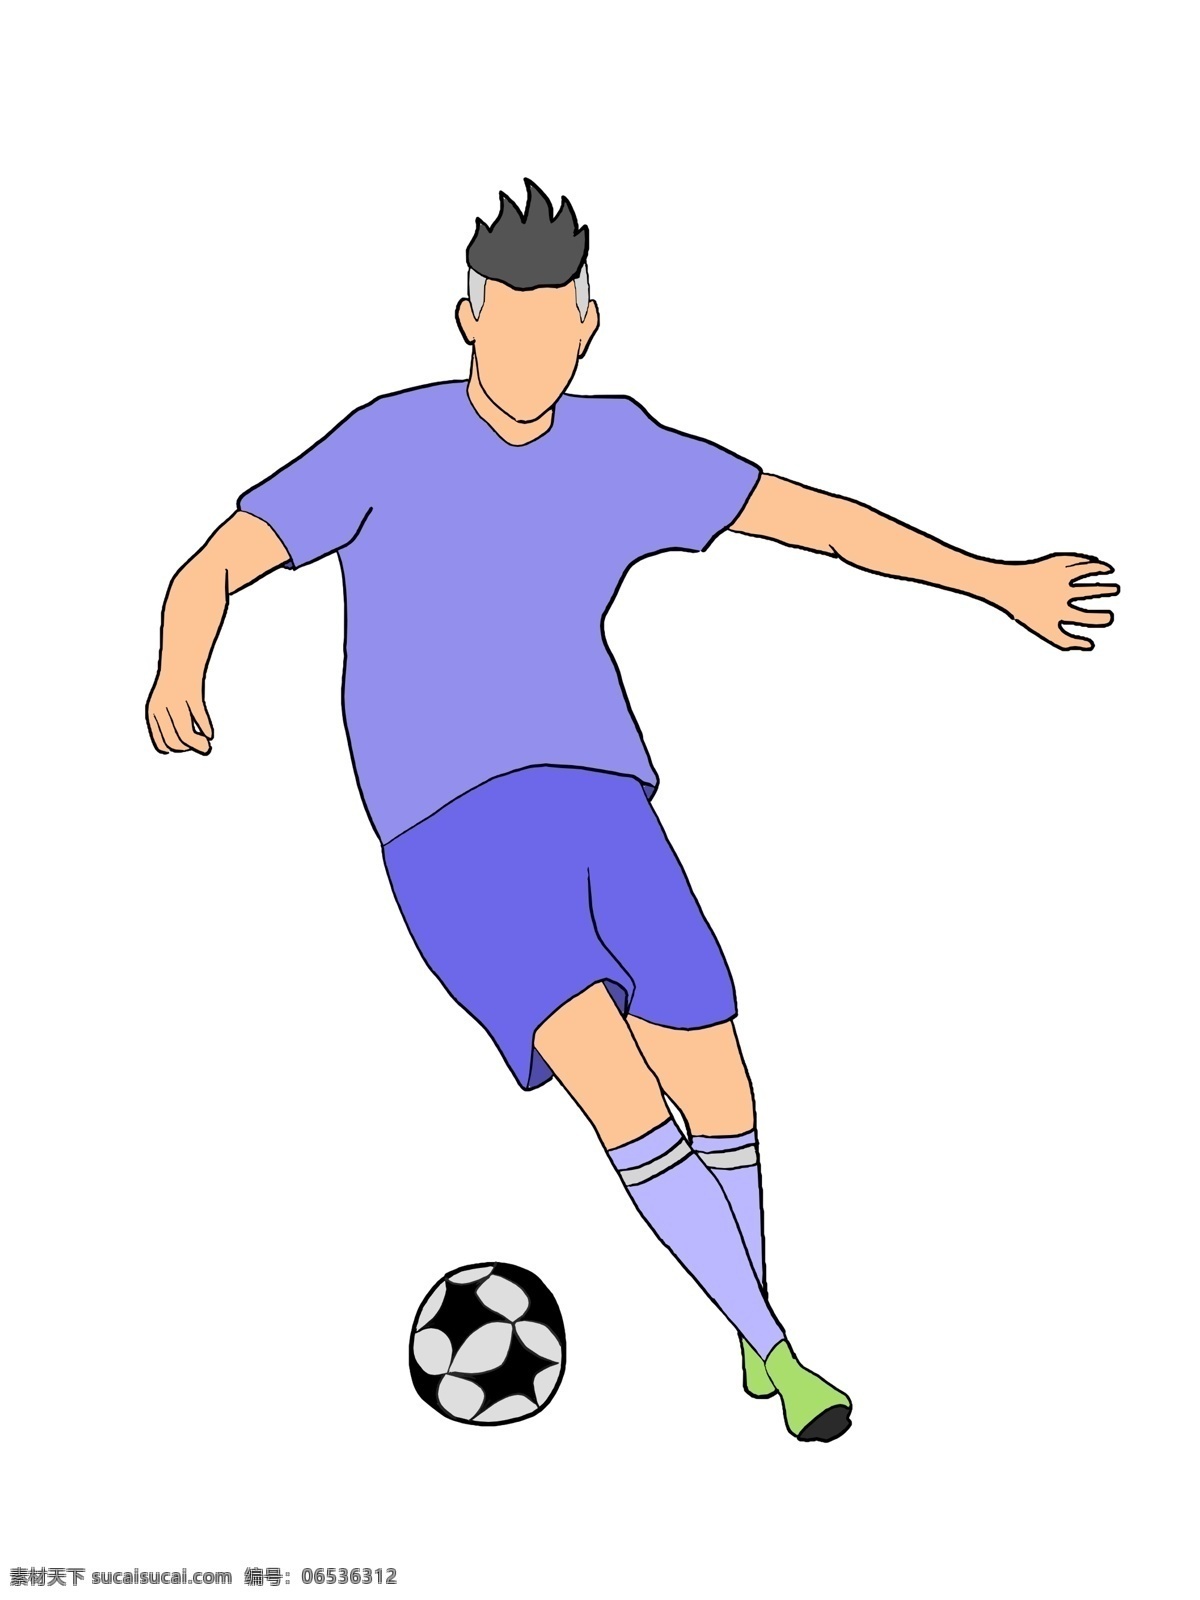 踢 足球 男孩 卡通 插画 踢足球的男孩 紫色球服 运动员插画 足球运动 体育运动 卡通足球插画 健身